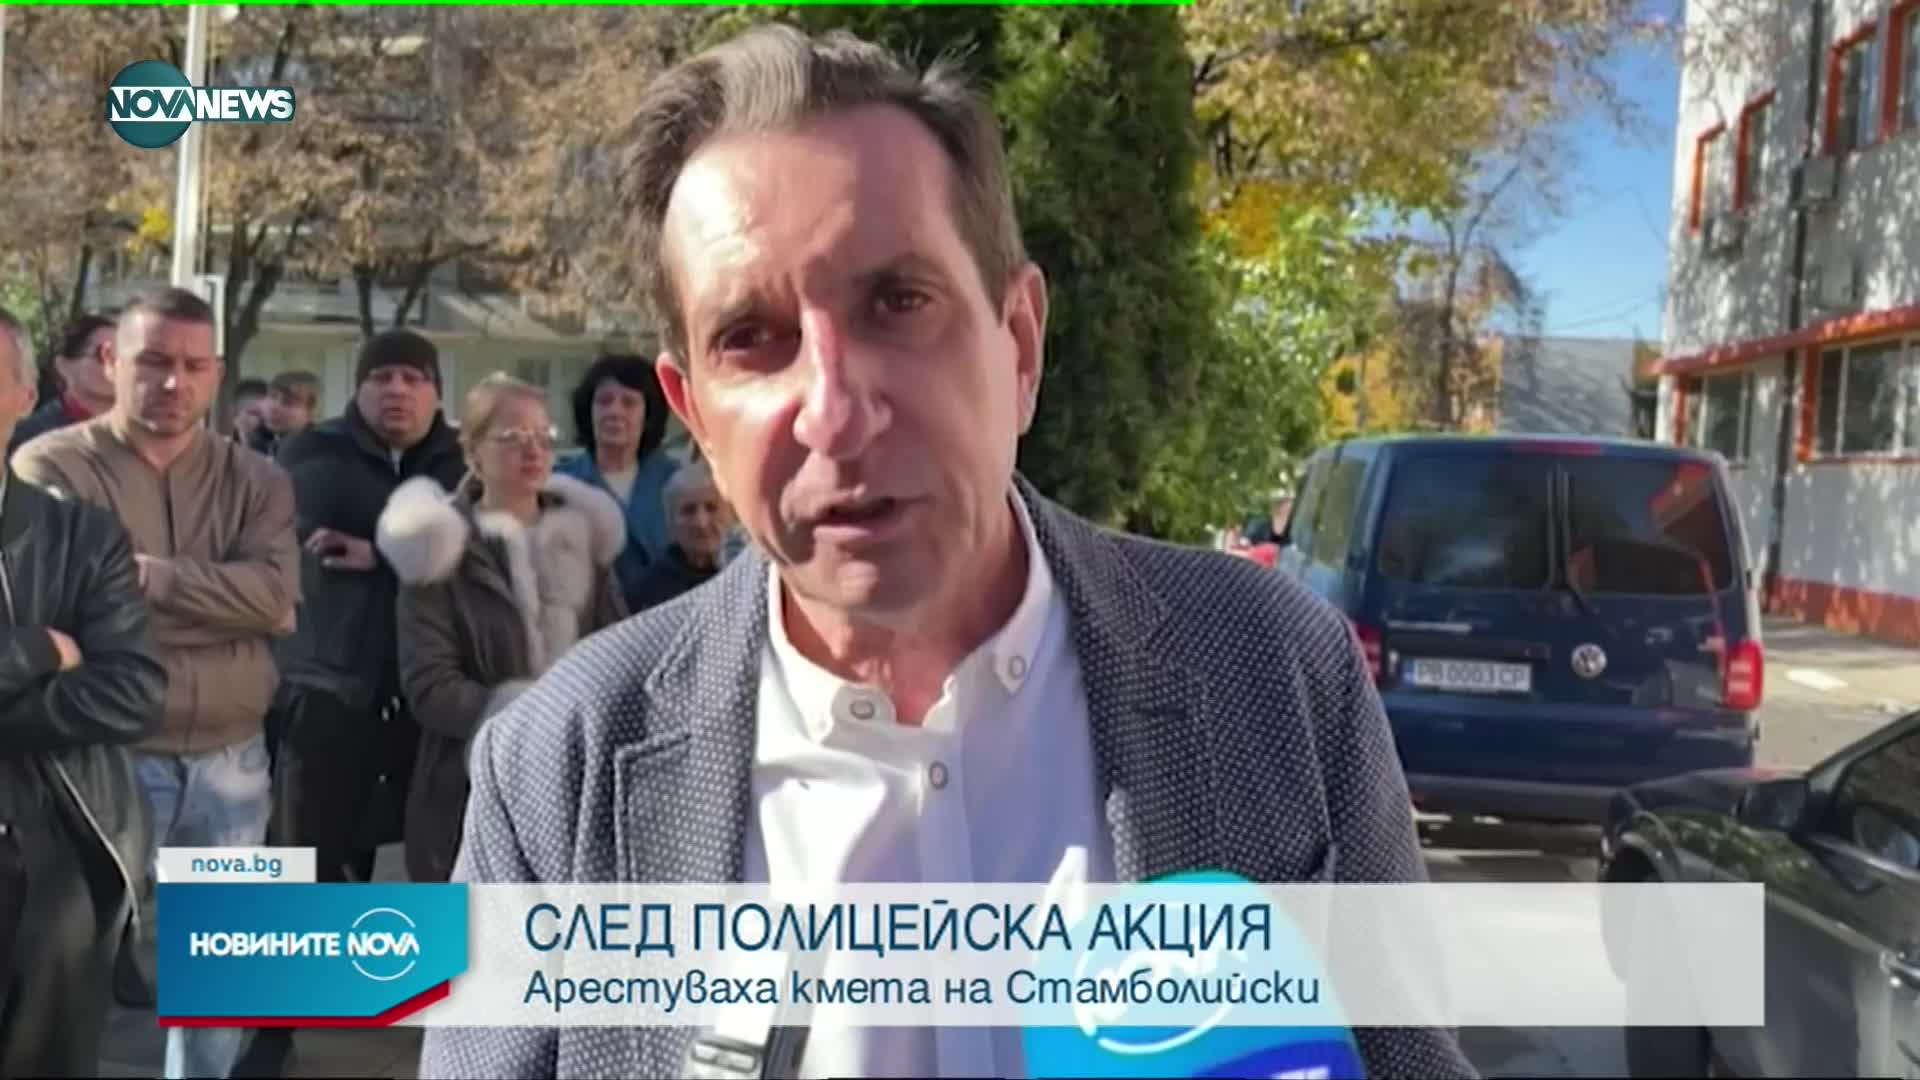 След полицейска акция: Отведоха за разпит кмета на Стамболийски